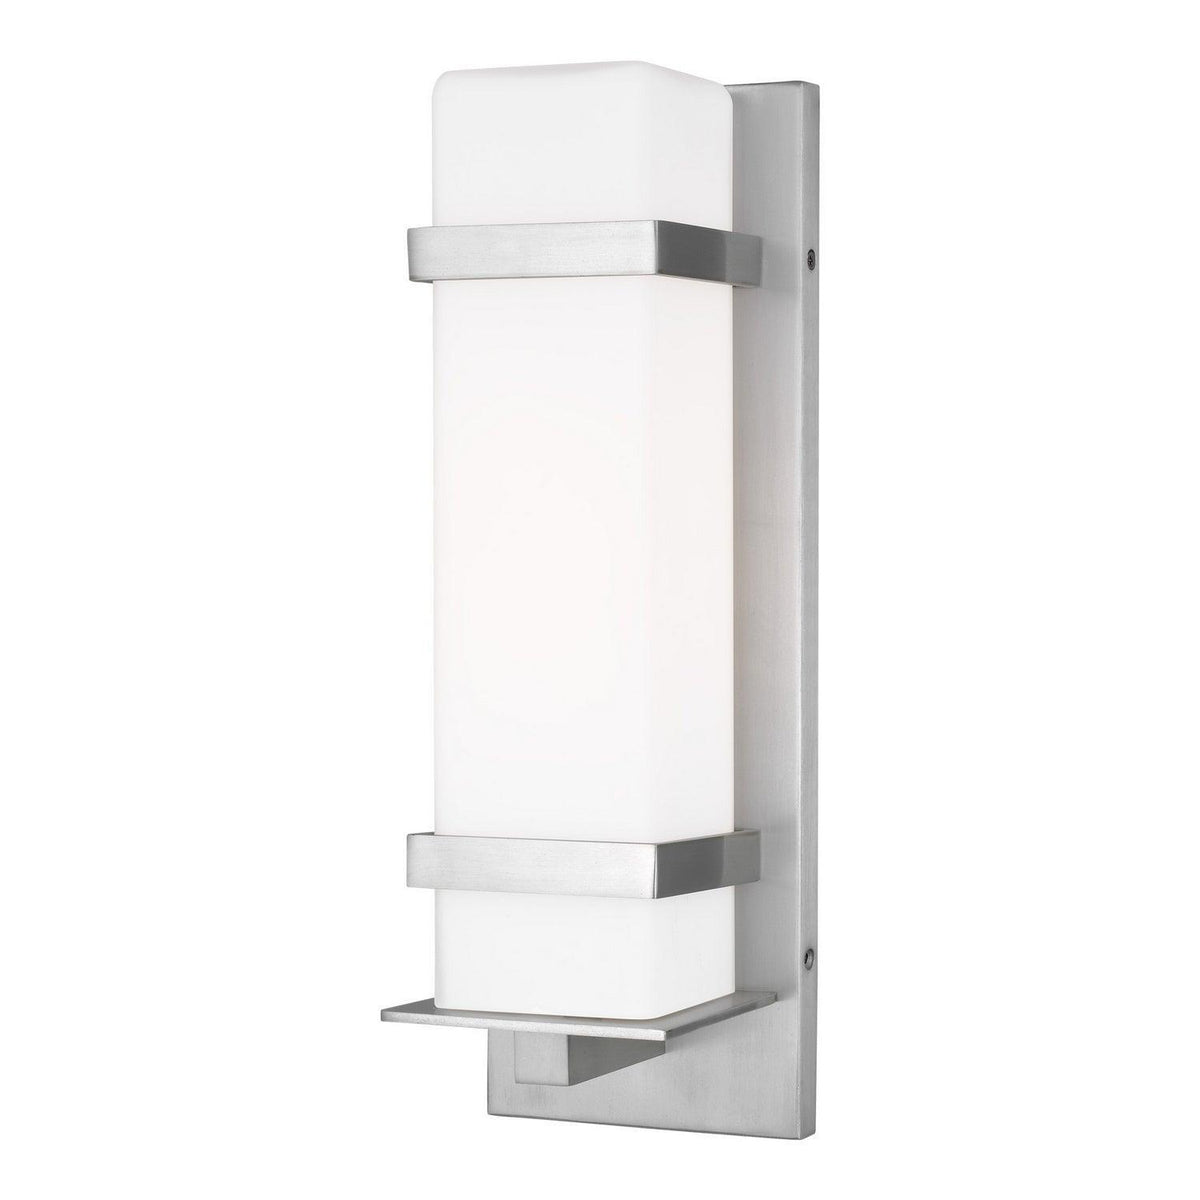 Generation Lighting - Alban Square Outdoor Wall Lantern - 8620701EN3-04 | Montreal Lighting & Hardware